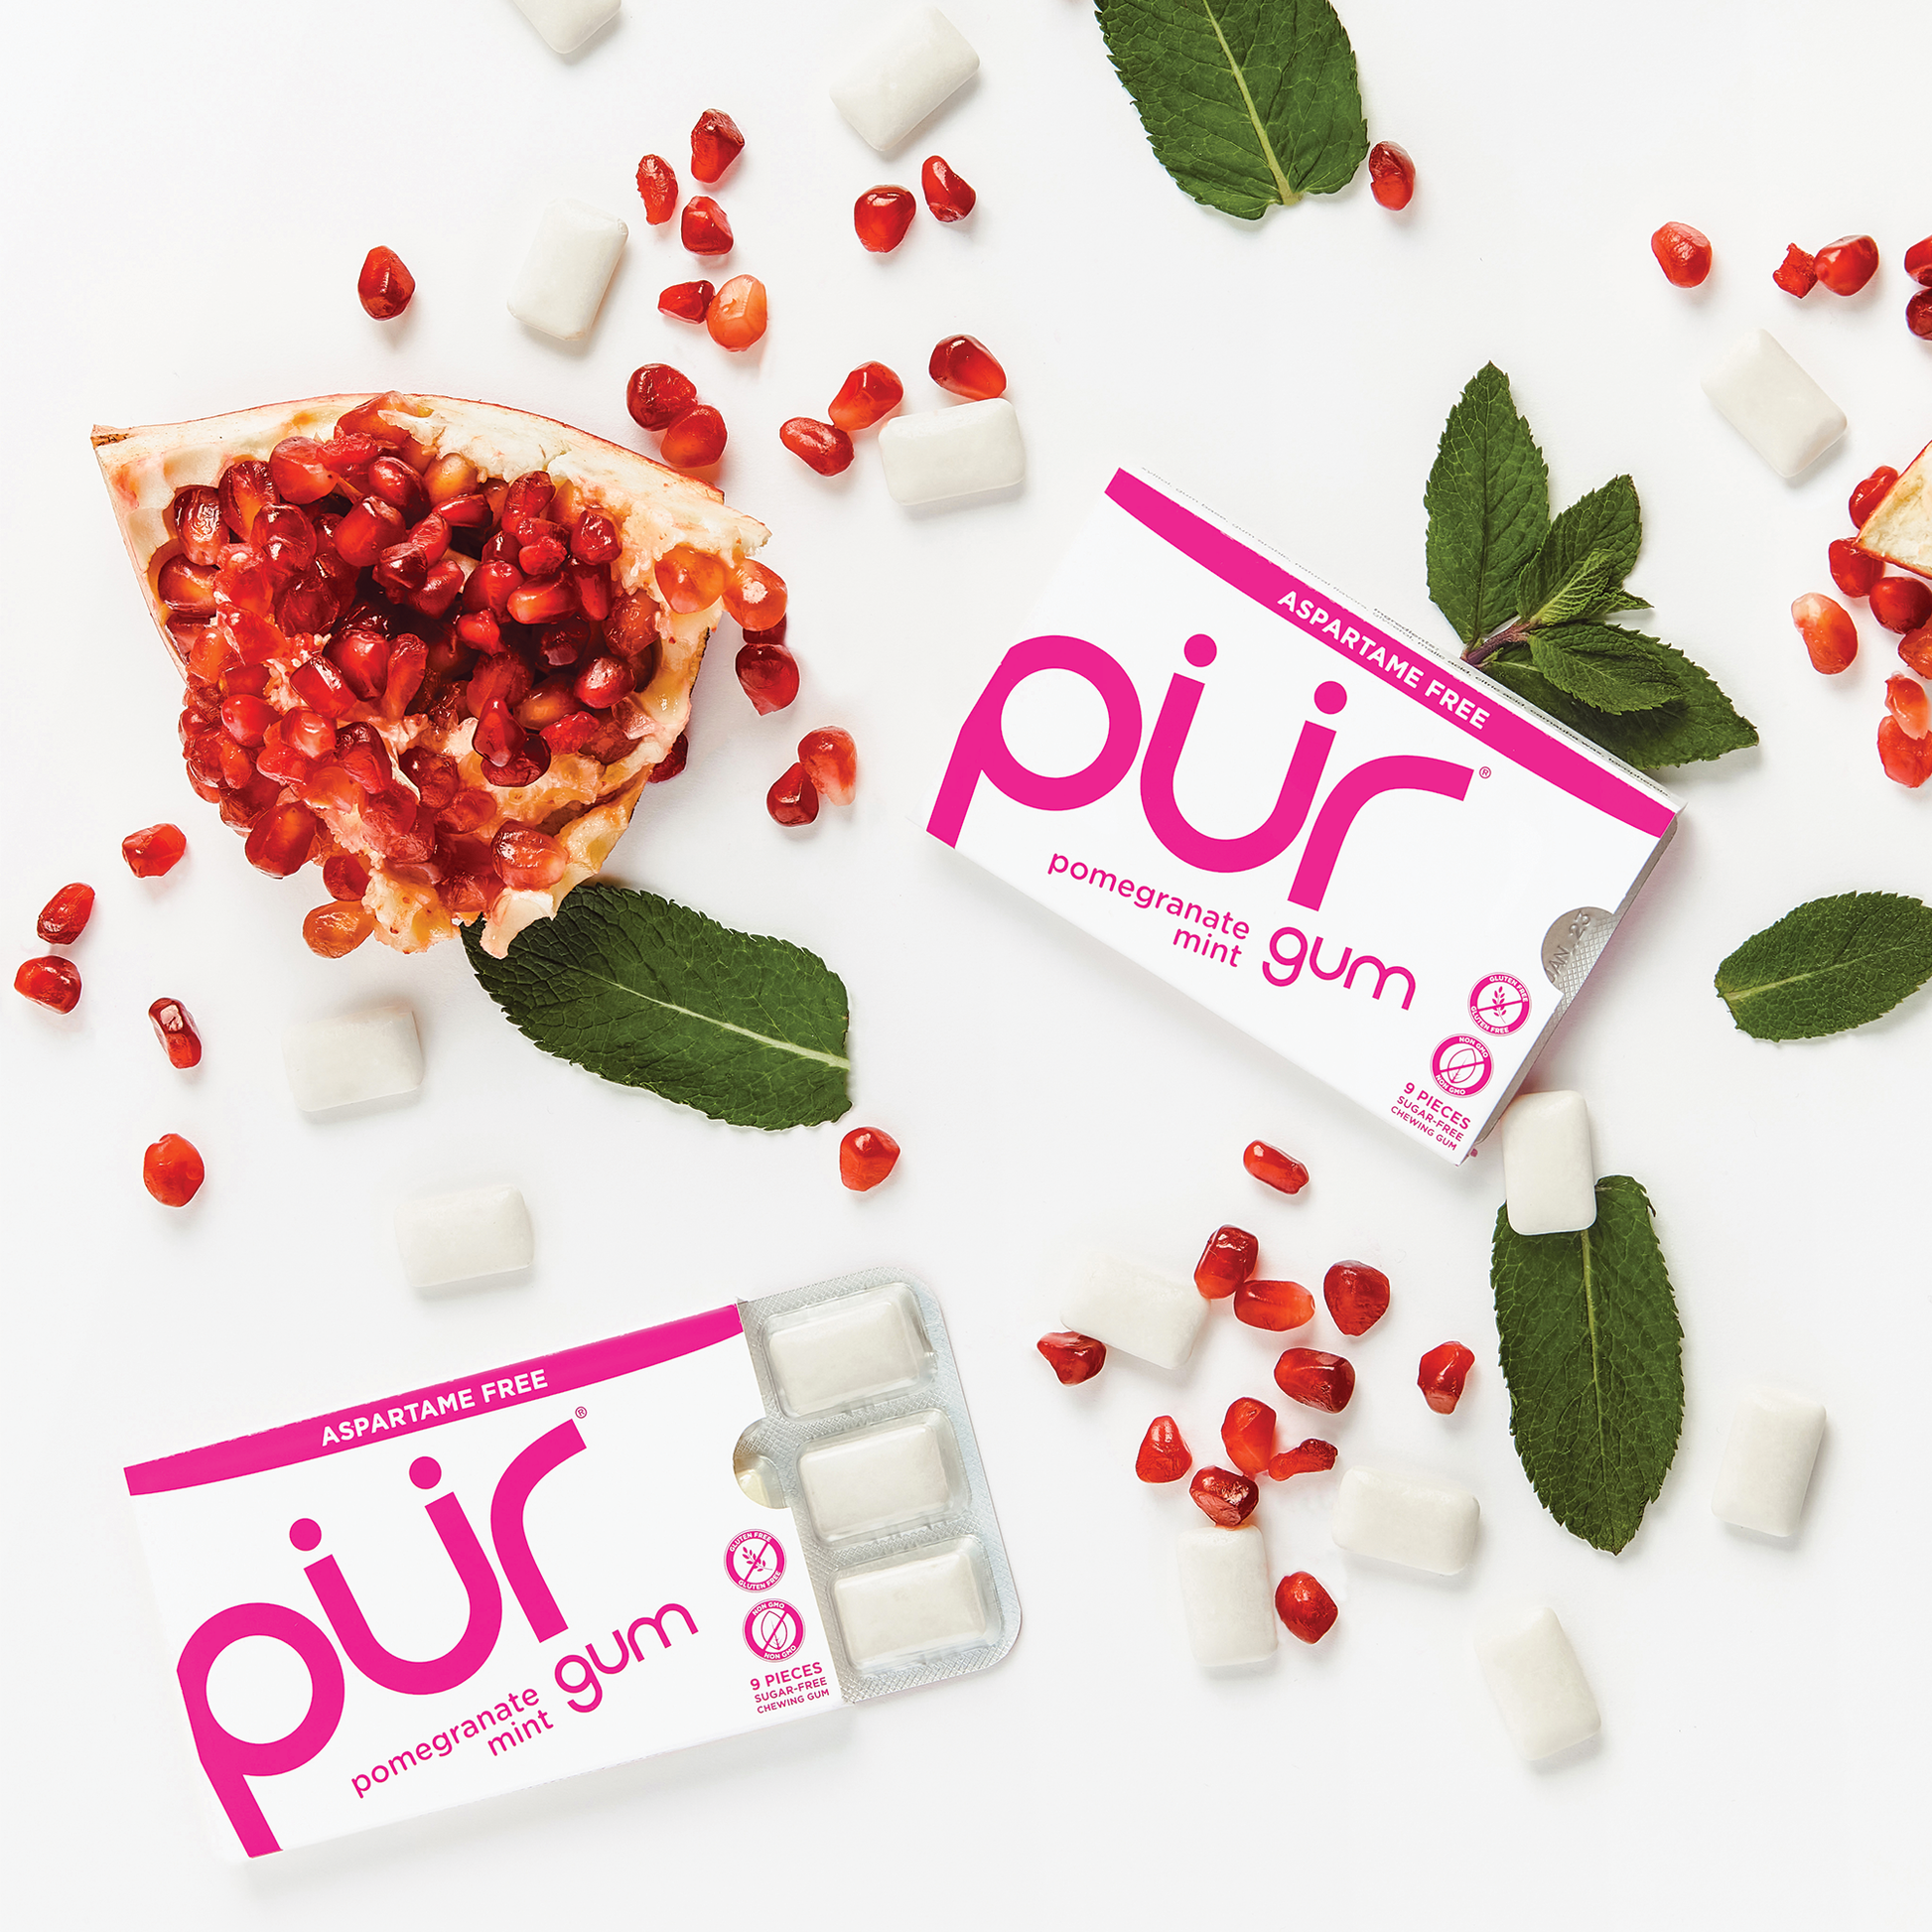 PUR Gum 6 Flavor Assortment Spearmint, Peppermint, Pomegranate Mint, W